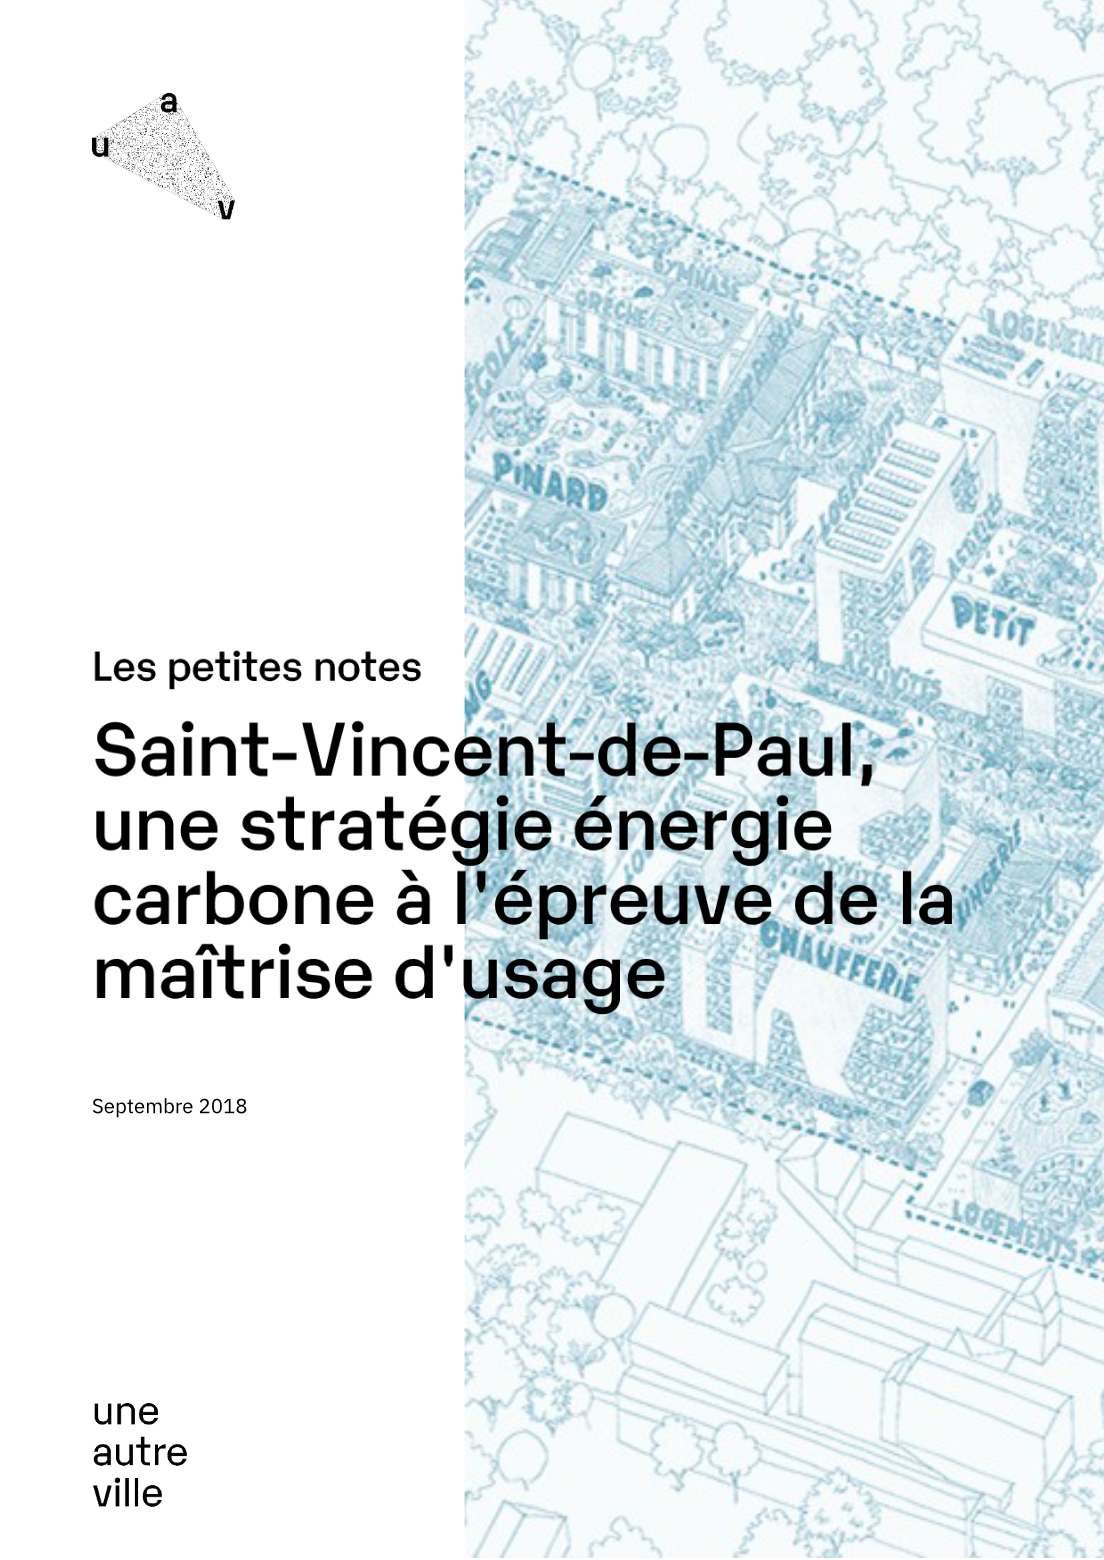 Saint-Vincent-de-Paul, une stratégie énergie carbone à l'épreuve de la maîtrise d'usage